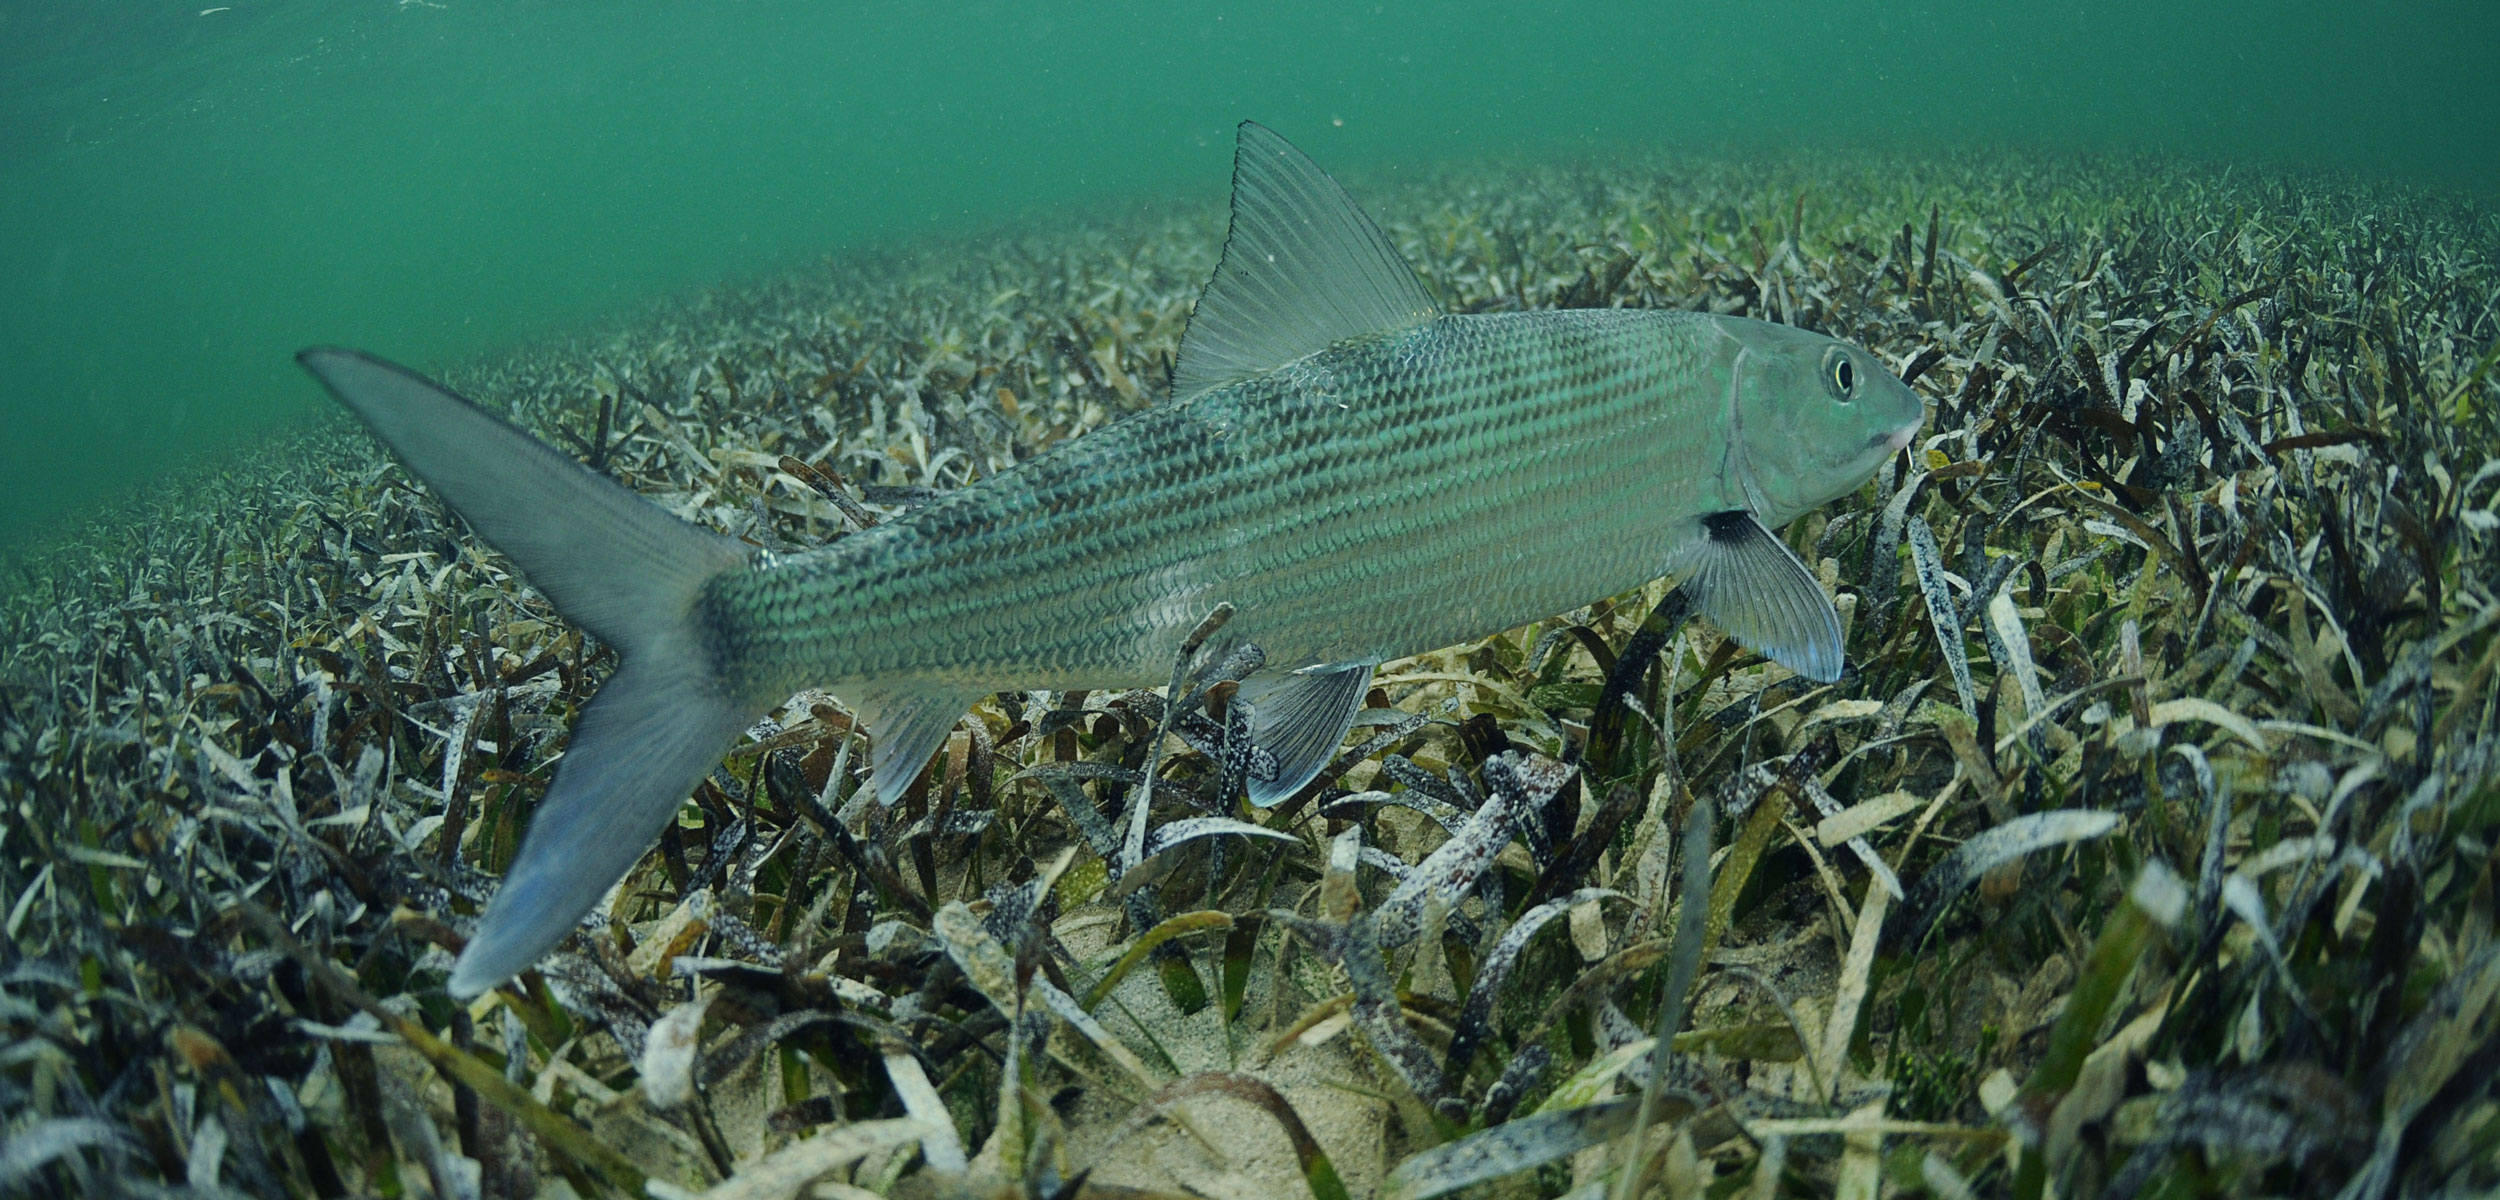 bonefish swimming over sea grass